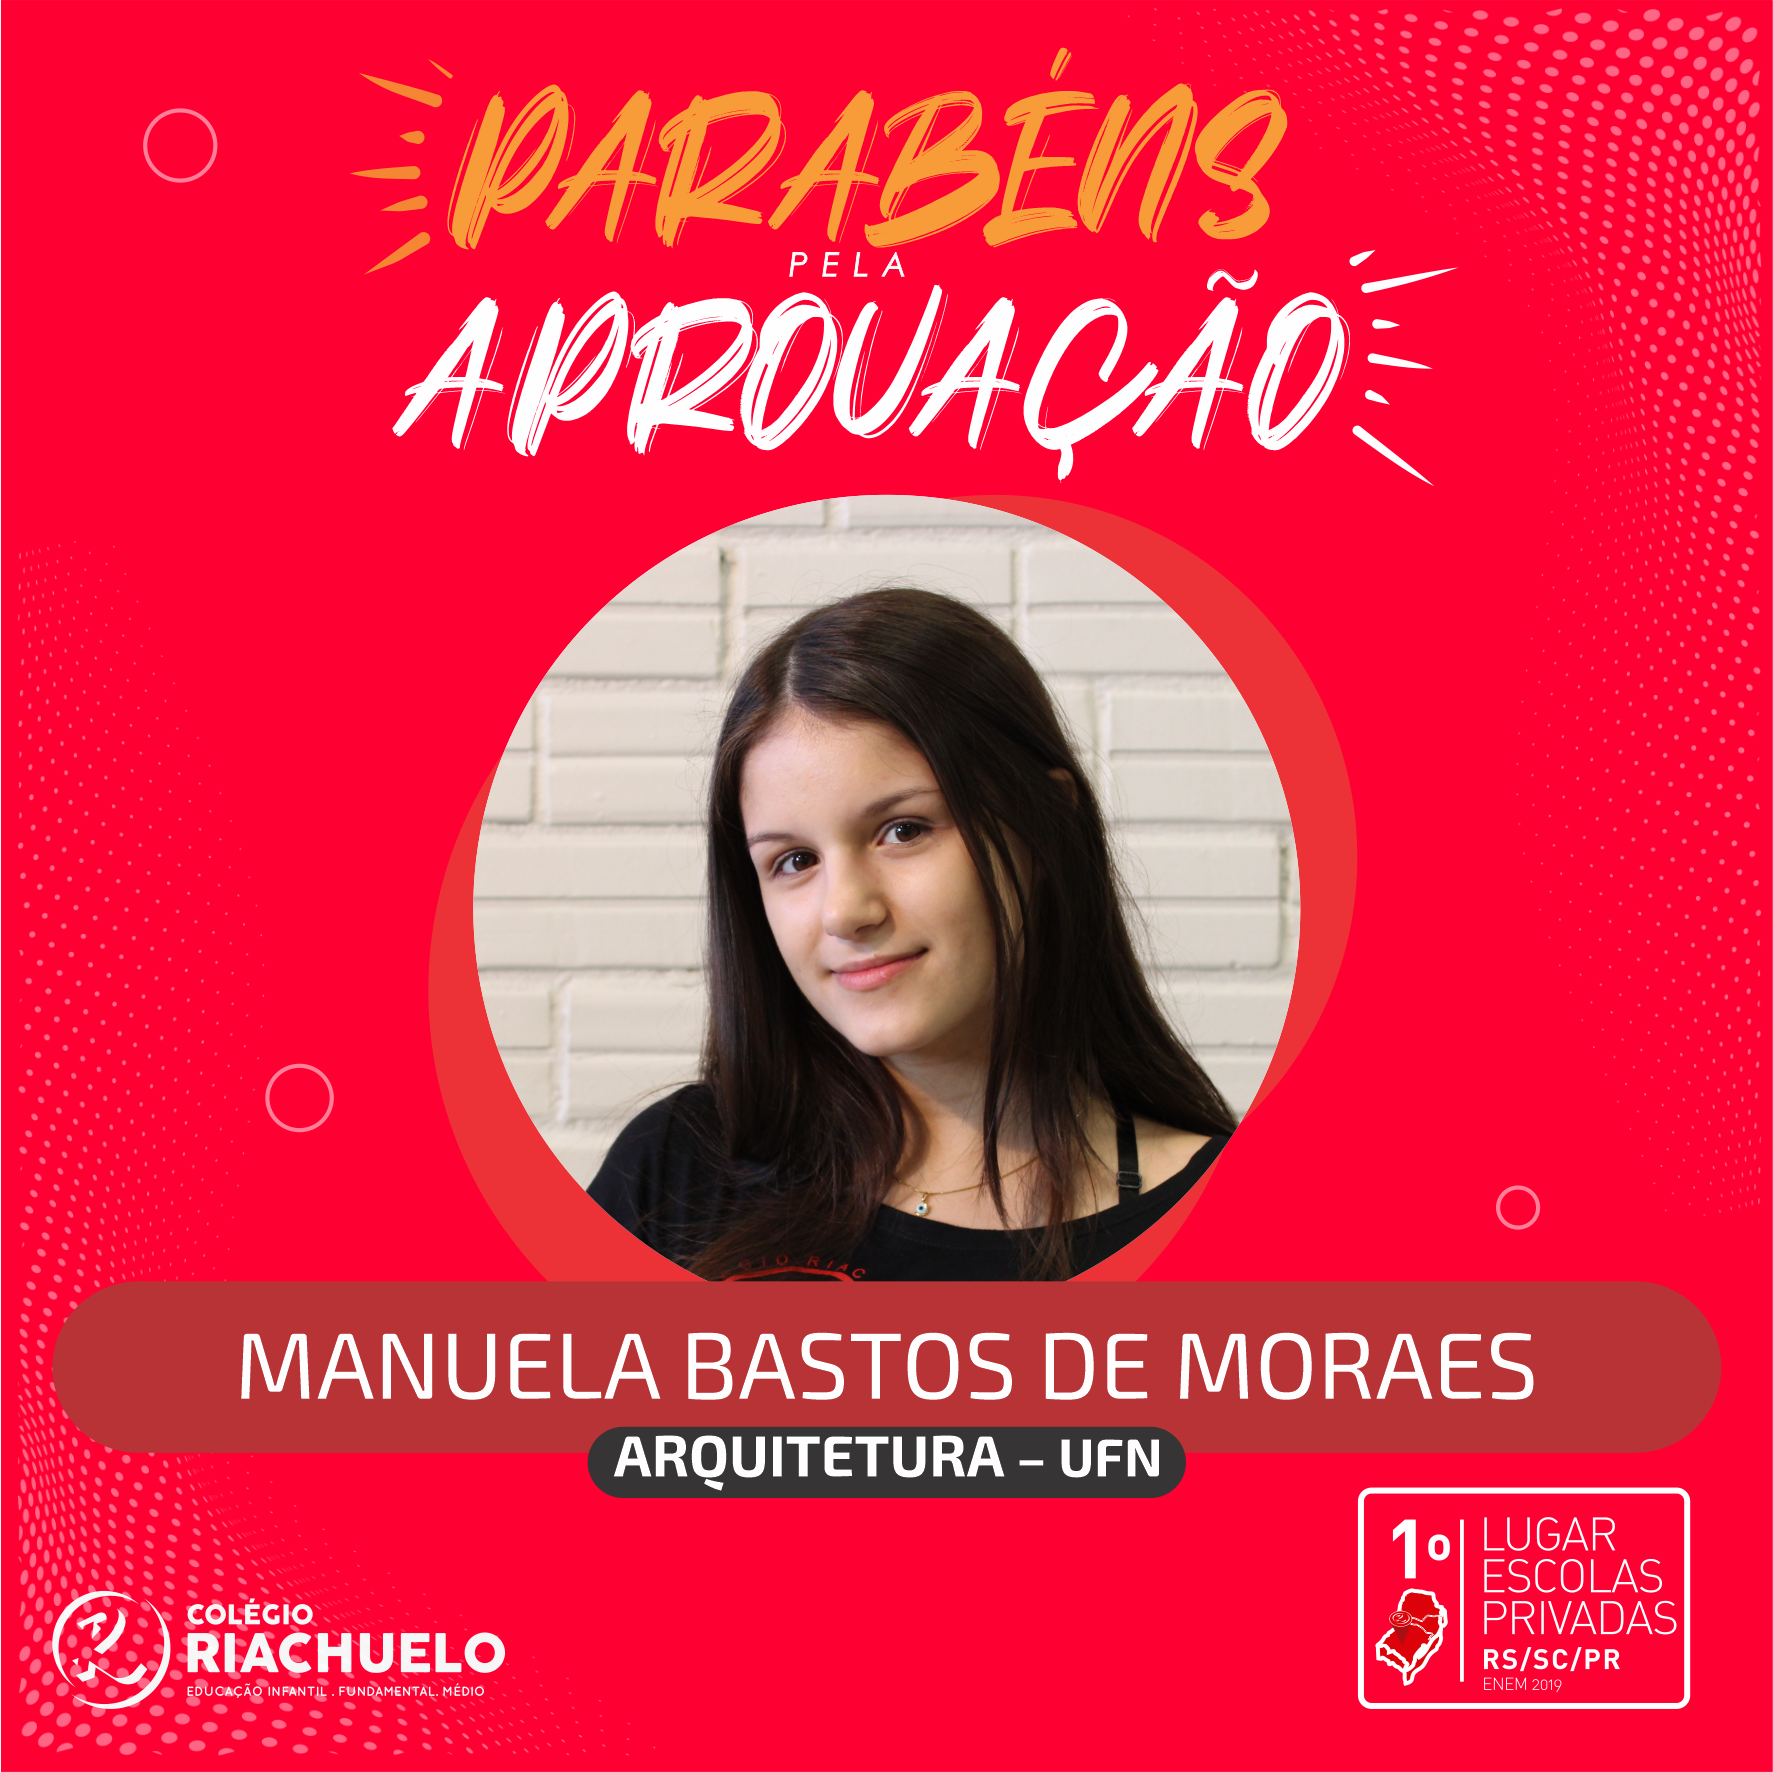 Manuela Bastos de Moraes